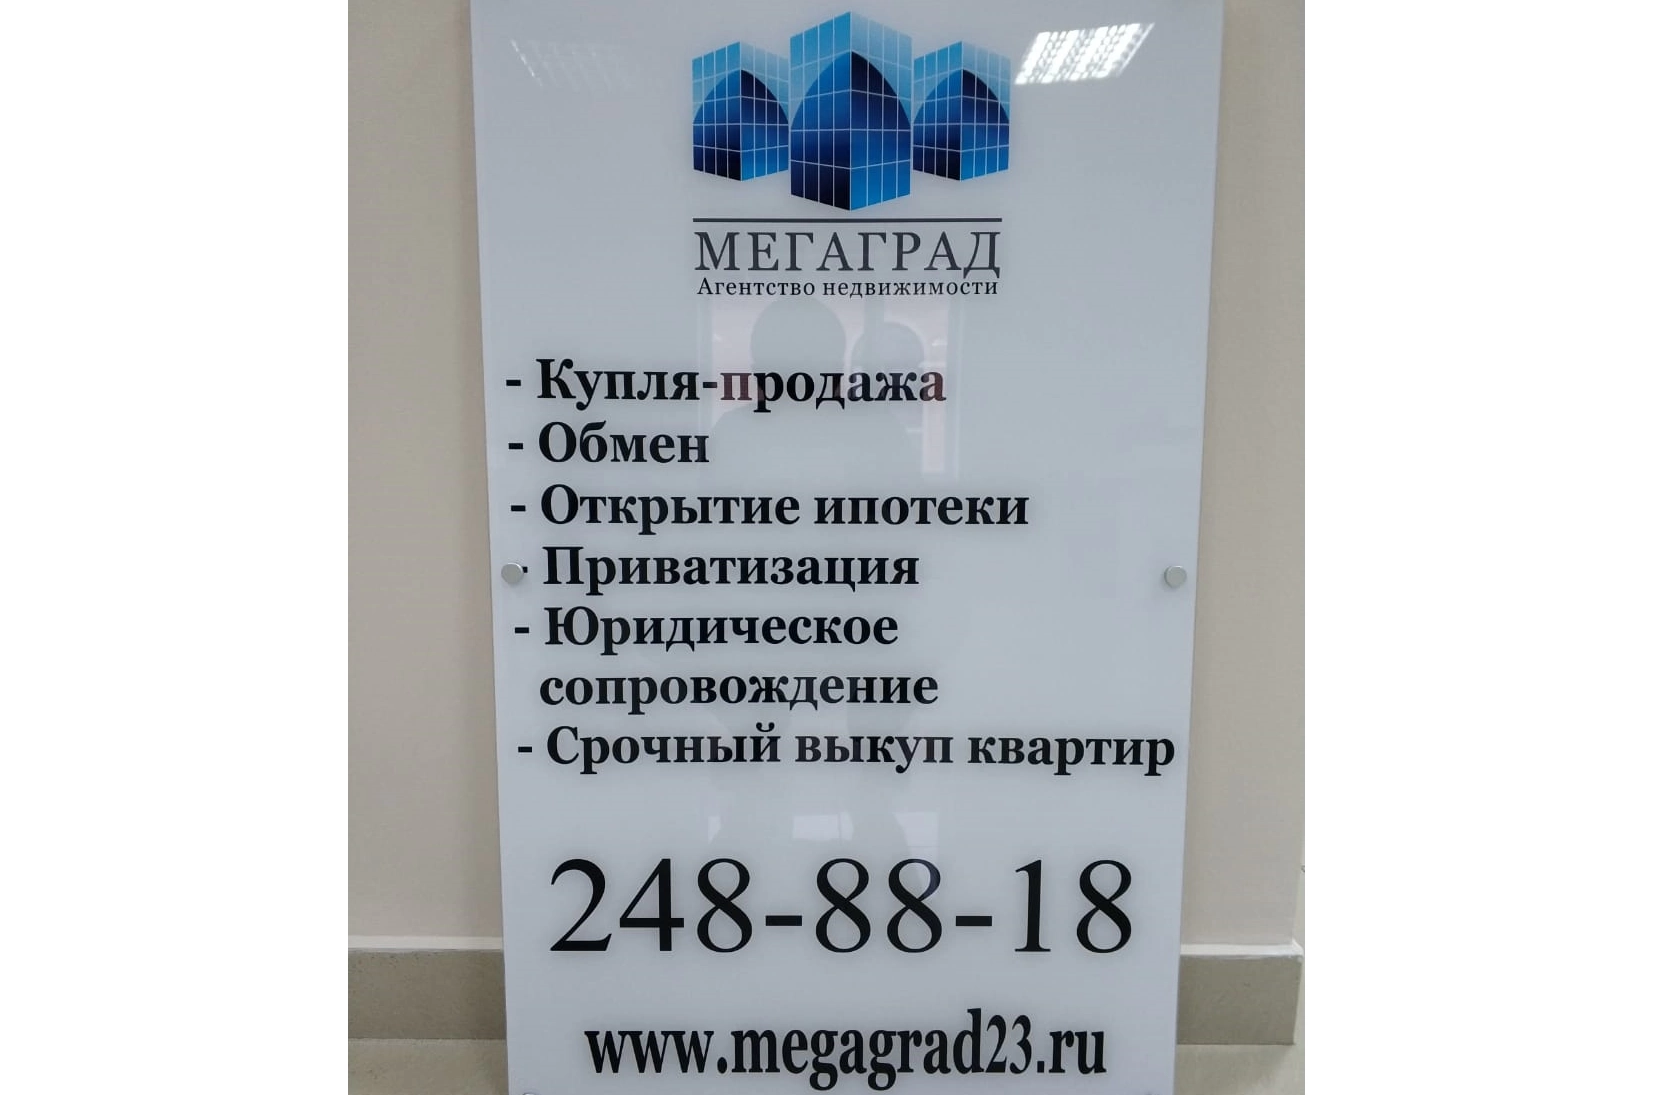 Рекламная табличка. Изготовление рекламных материалов в типографии Quickprint г. Краснодар